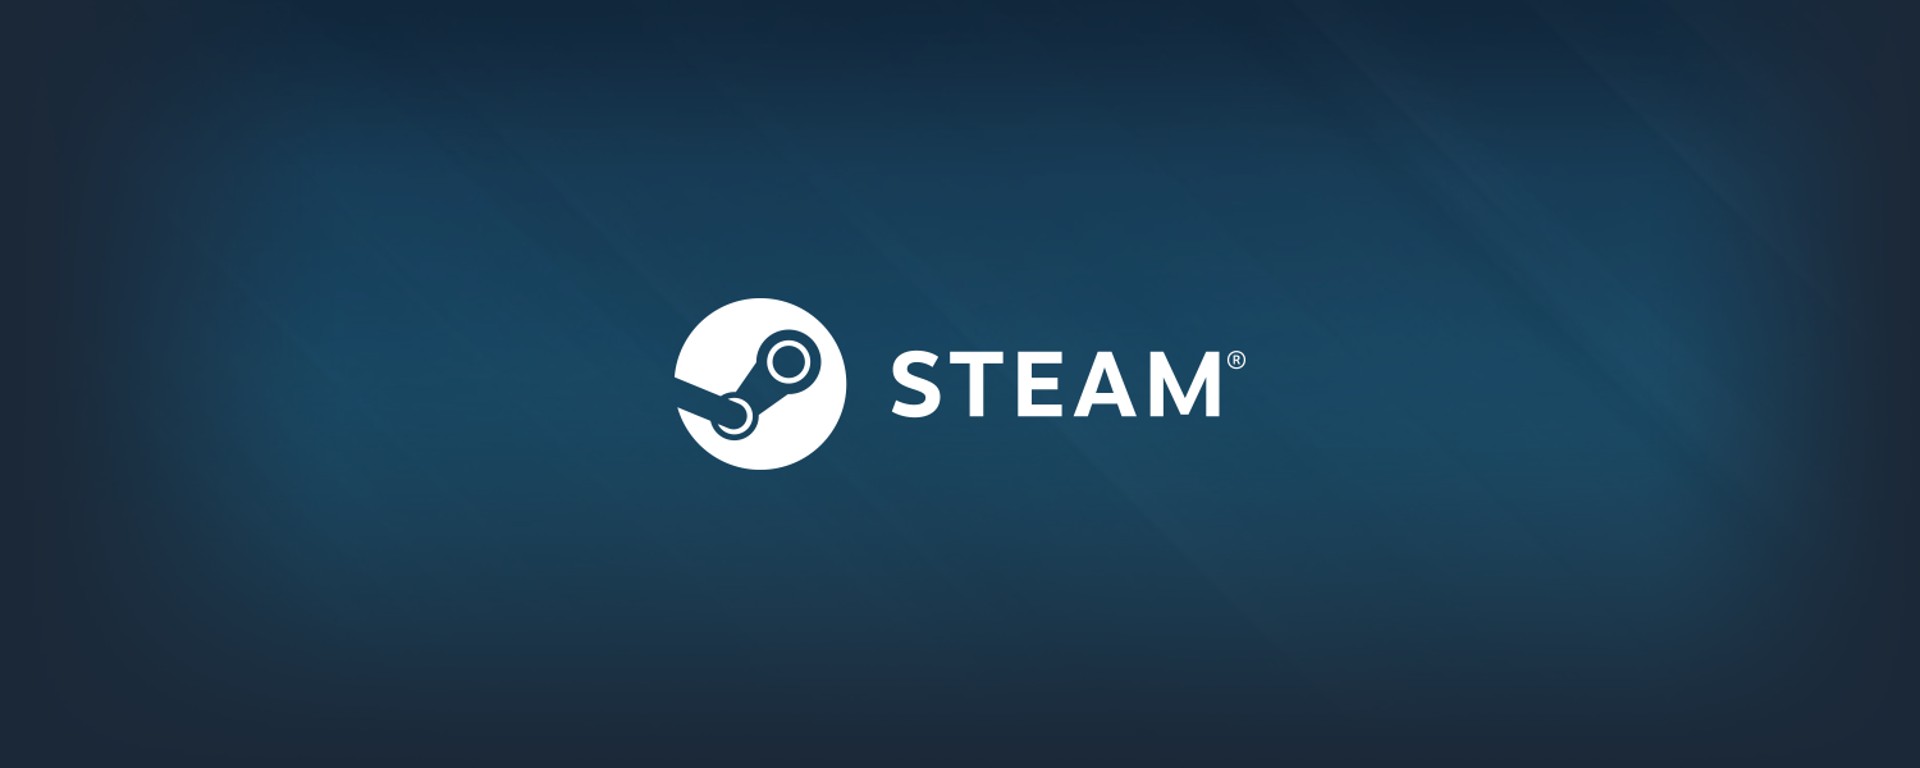 Steam สร้างสถิติใหม่ ยอดผู้ใช้งานพร้อมกันสูงถึง 30 ล้านบัญชี